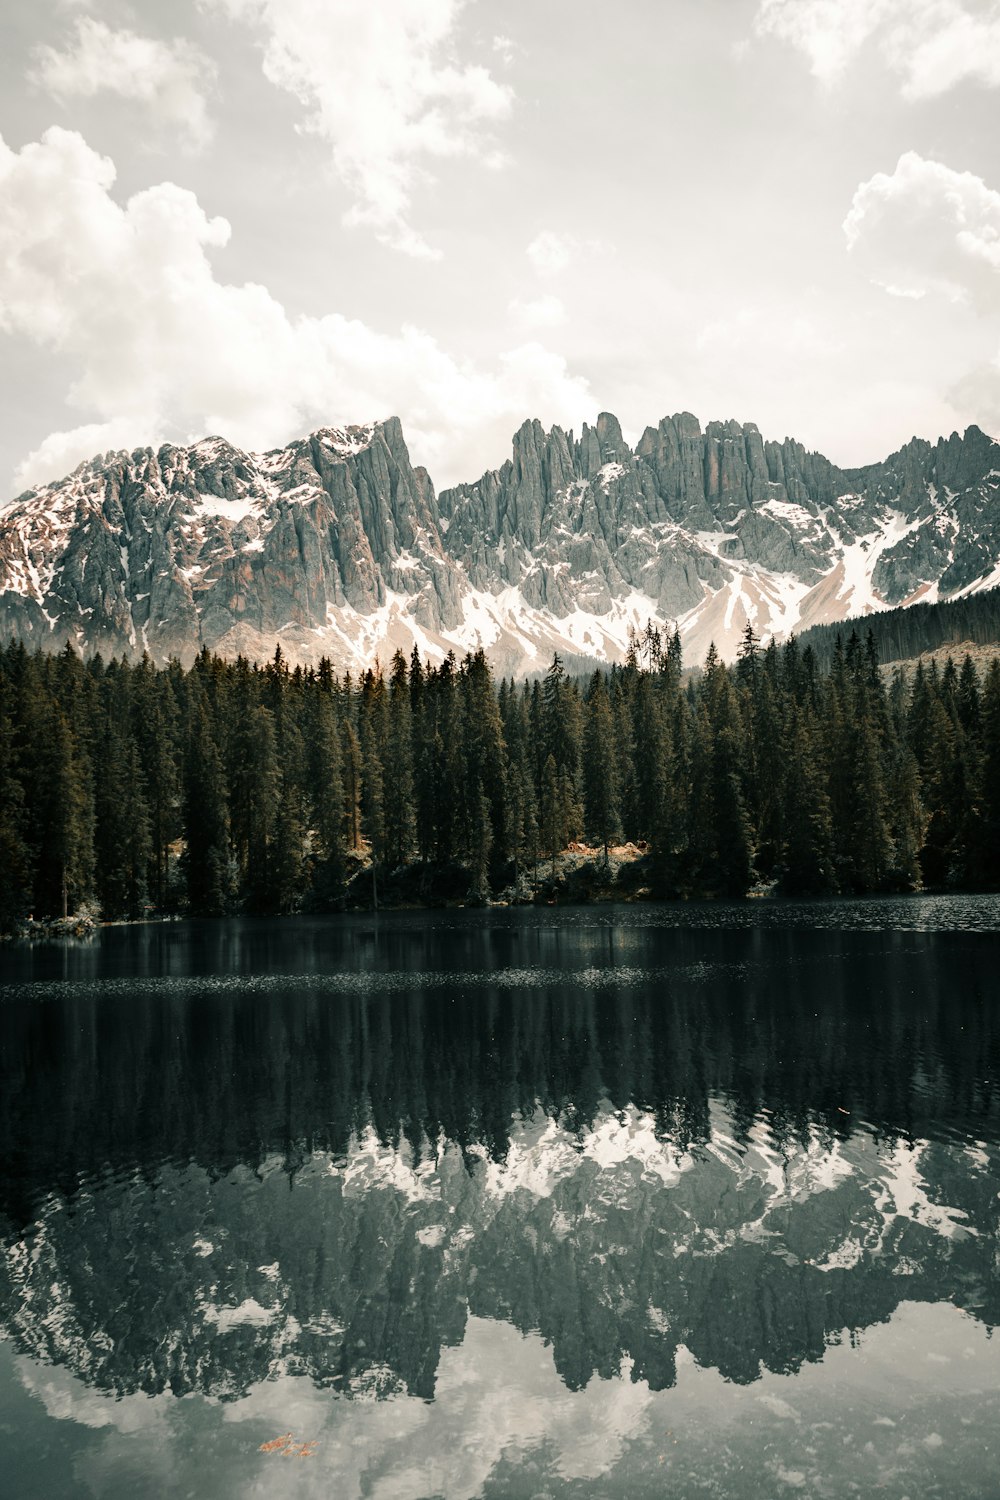 Una catena montuosa si riflette nell'acqua ferma di un lago